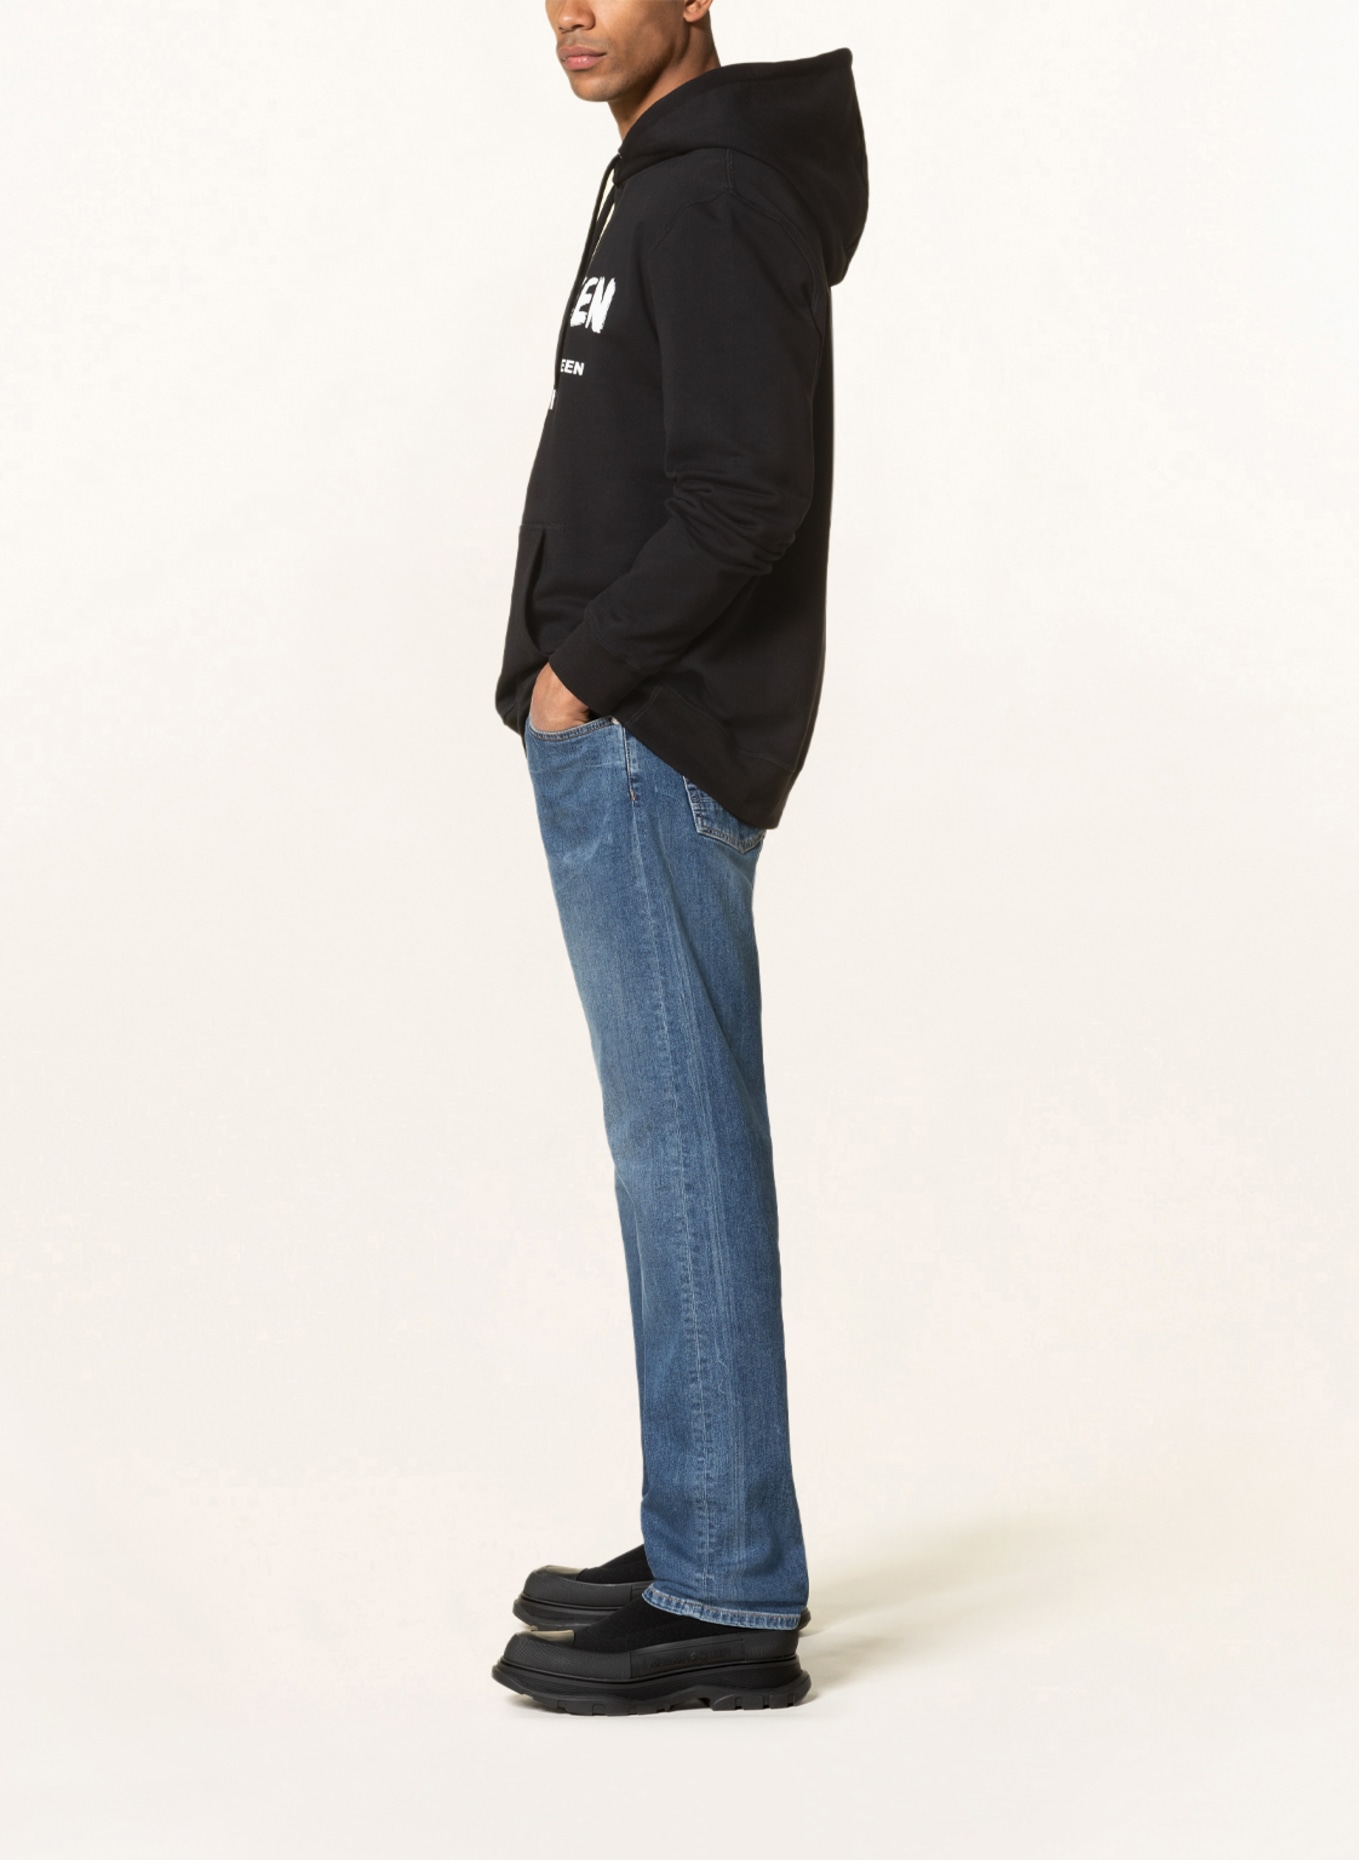 Alexander McQUEEN Oversized hoodie , Color: BLACK (Image 4)